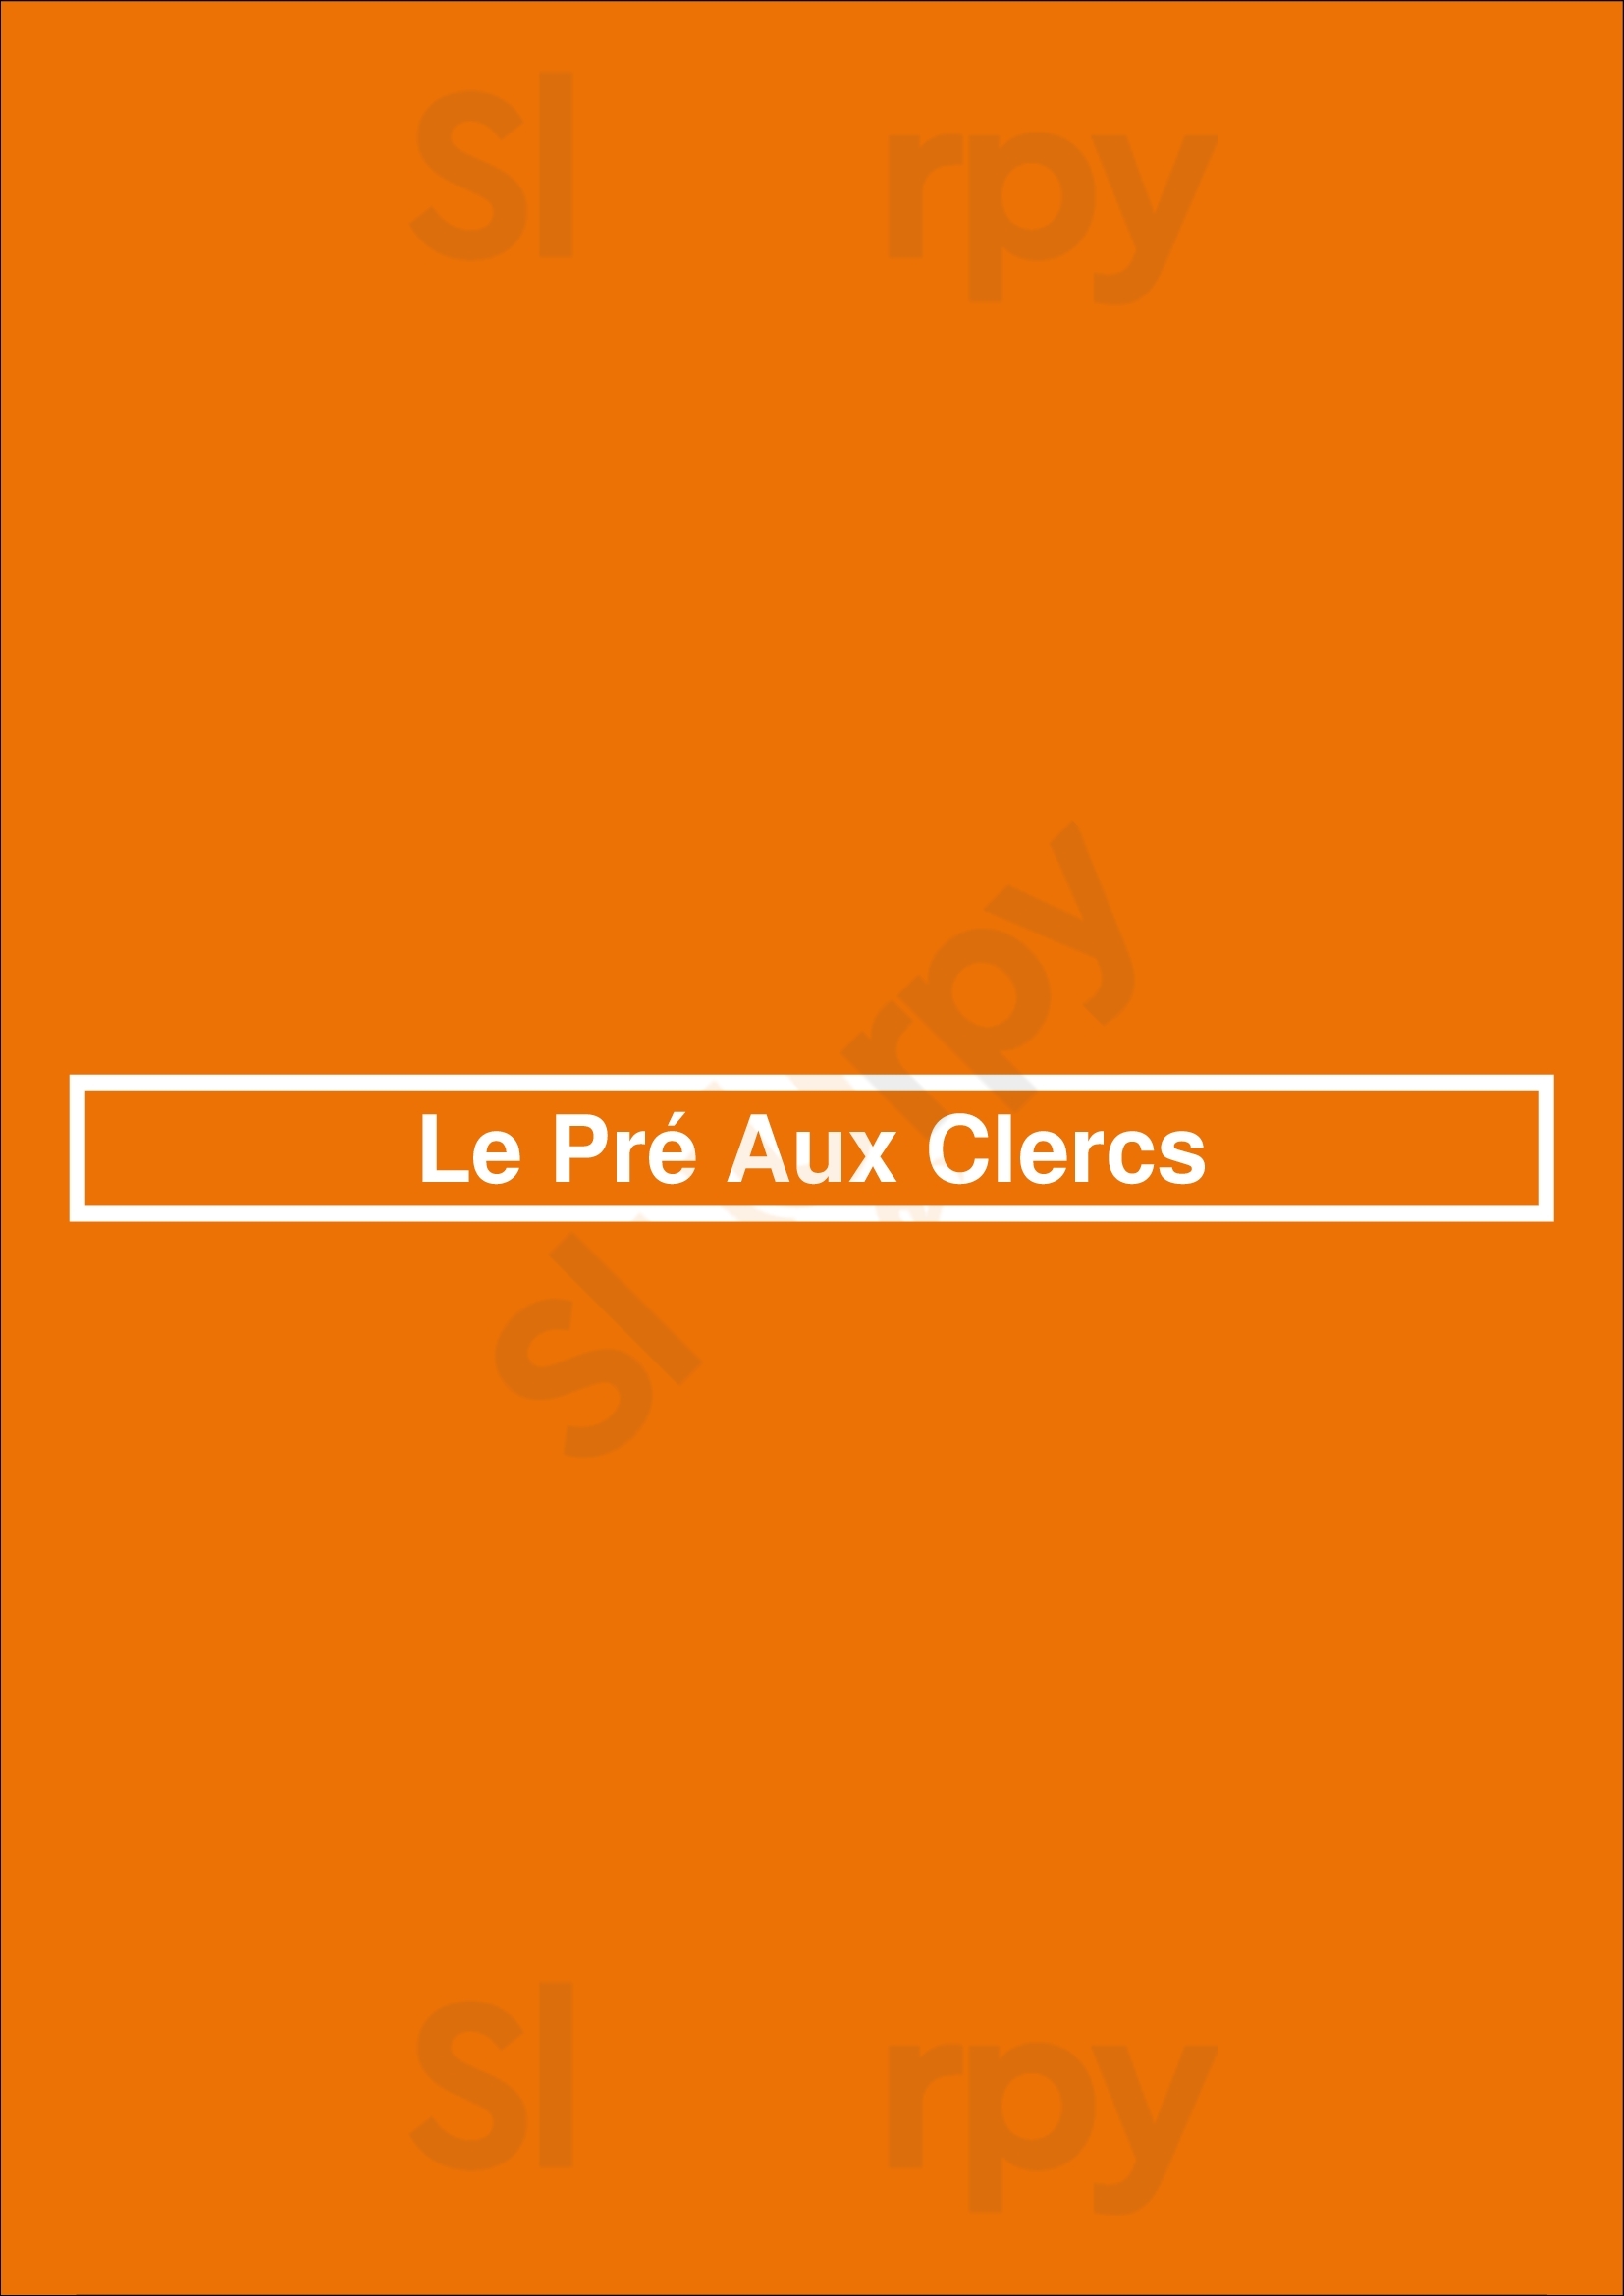 Le Pré Aux Clercs Paris Menu - 1